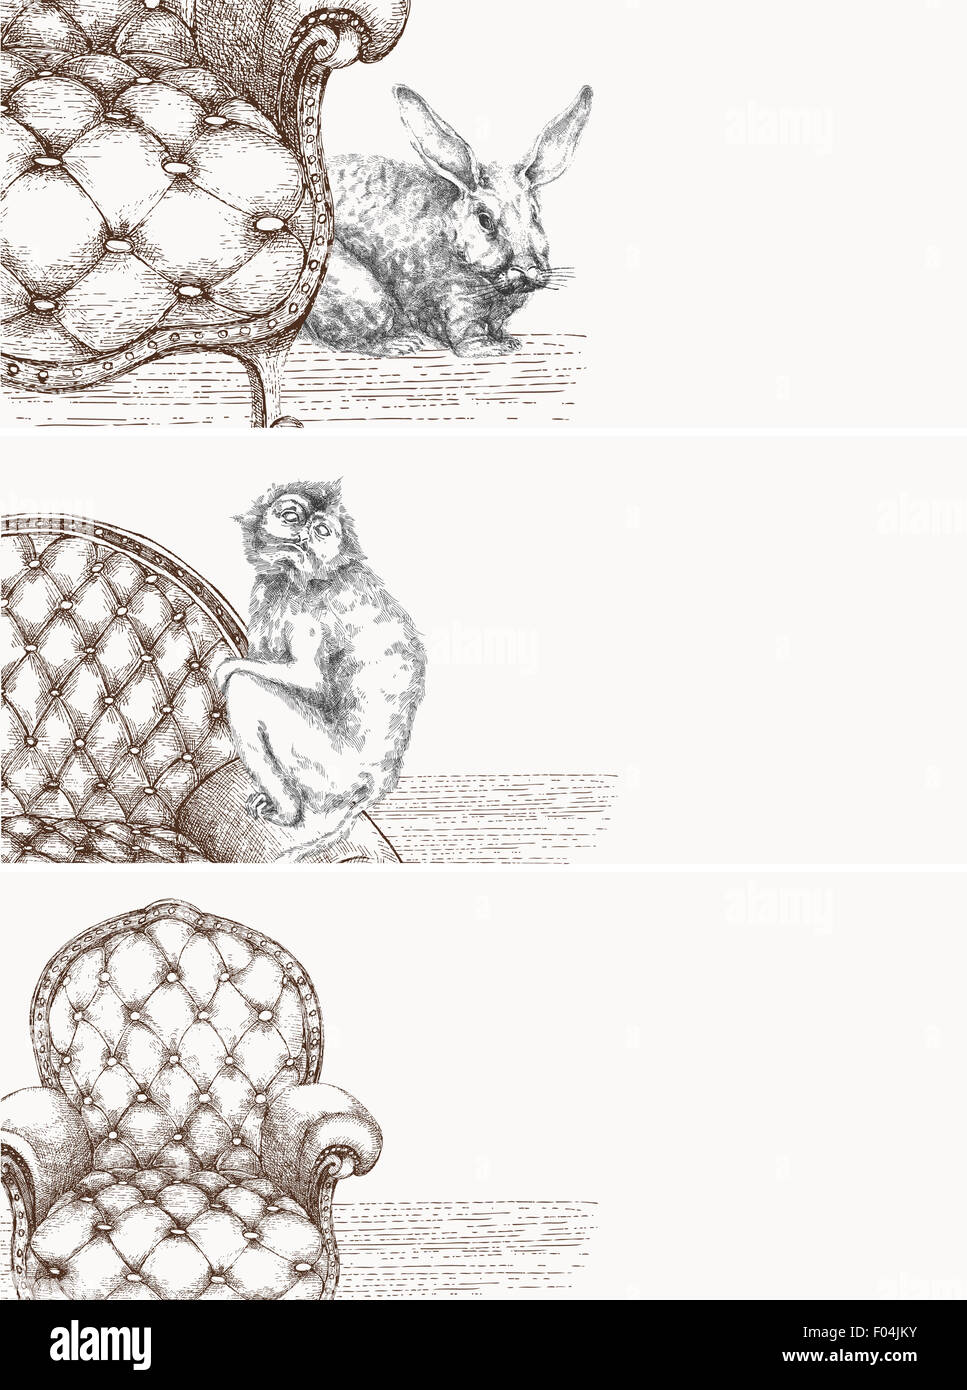 Dekorative Zeichnung Banner-Details der Möbel und Tiere Stockfoto